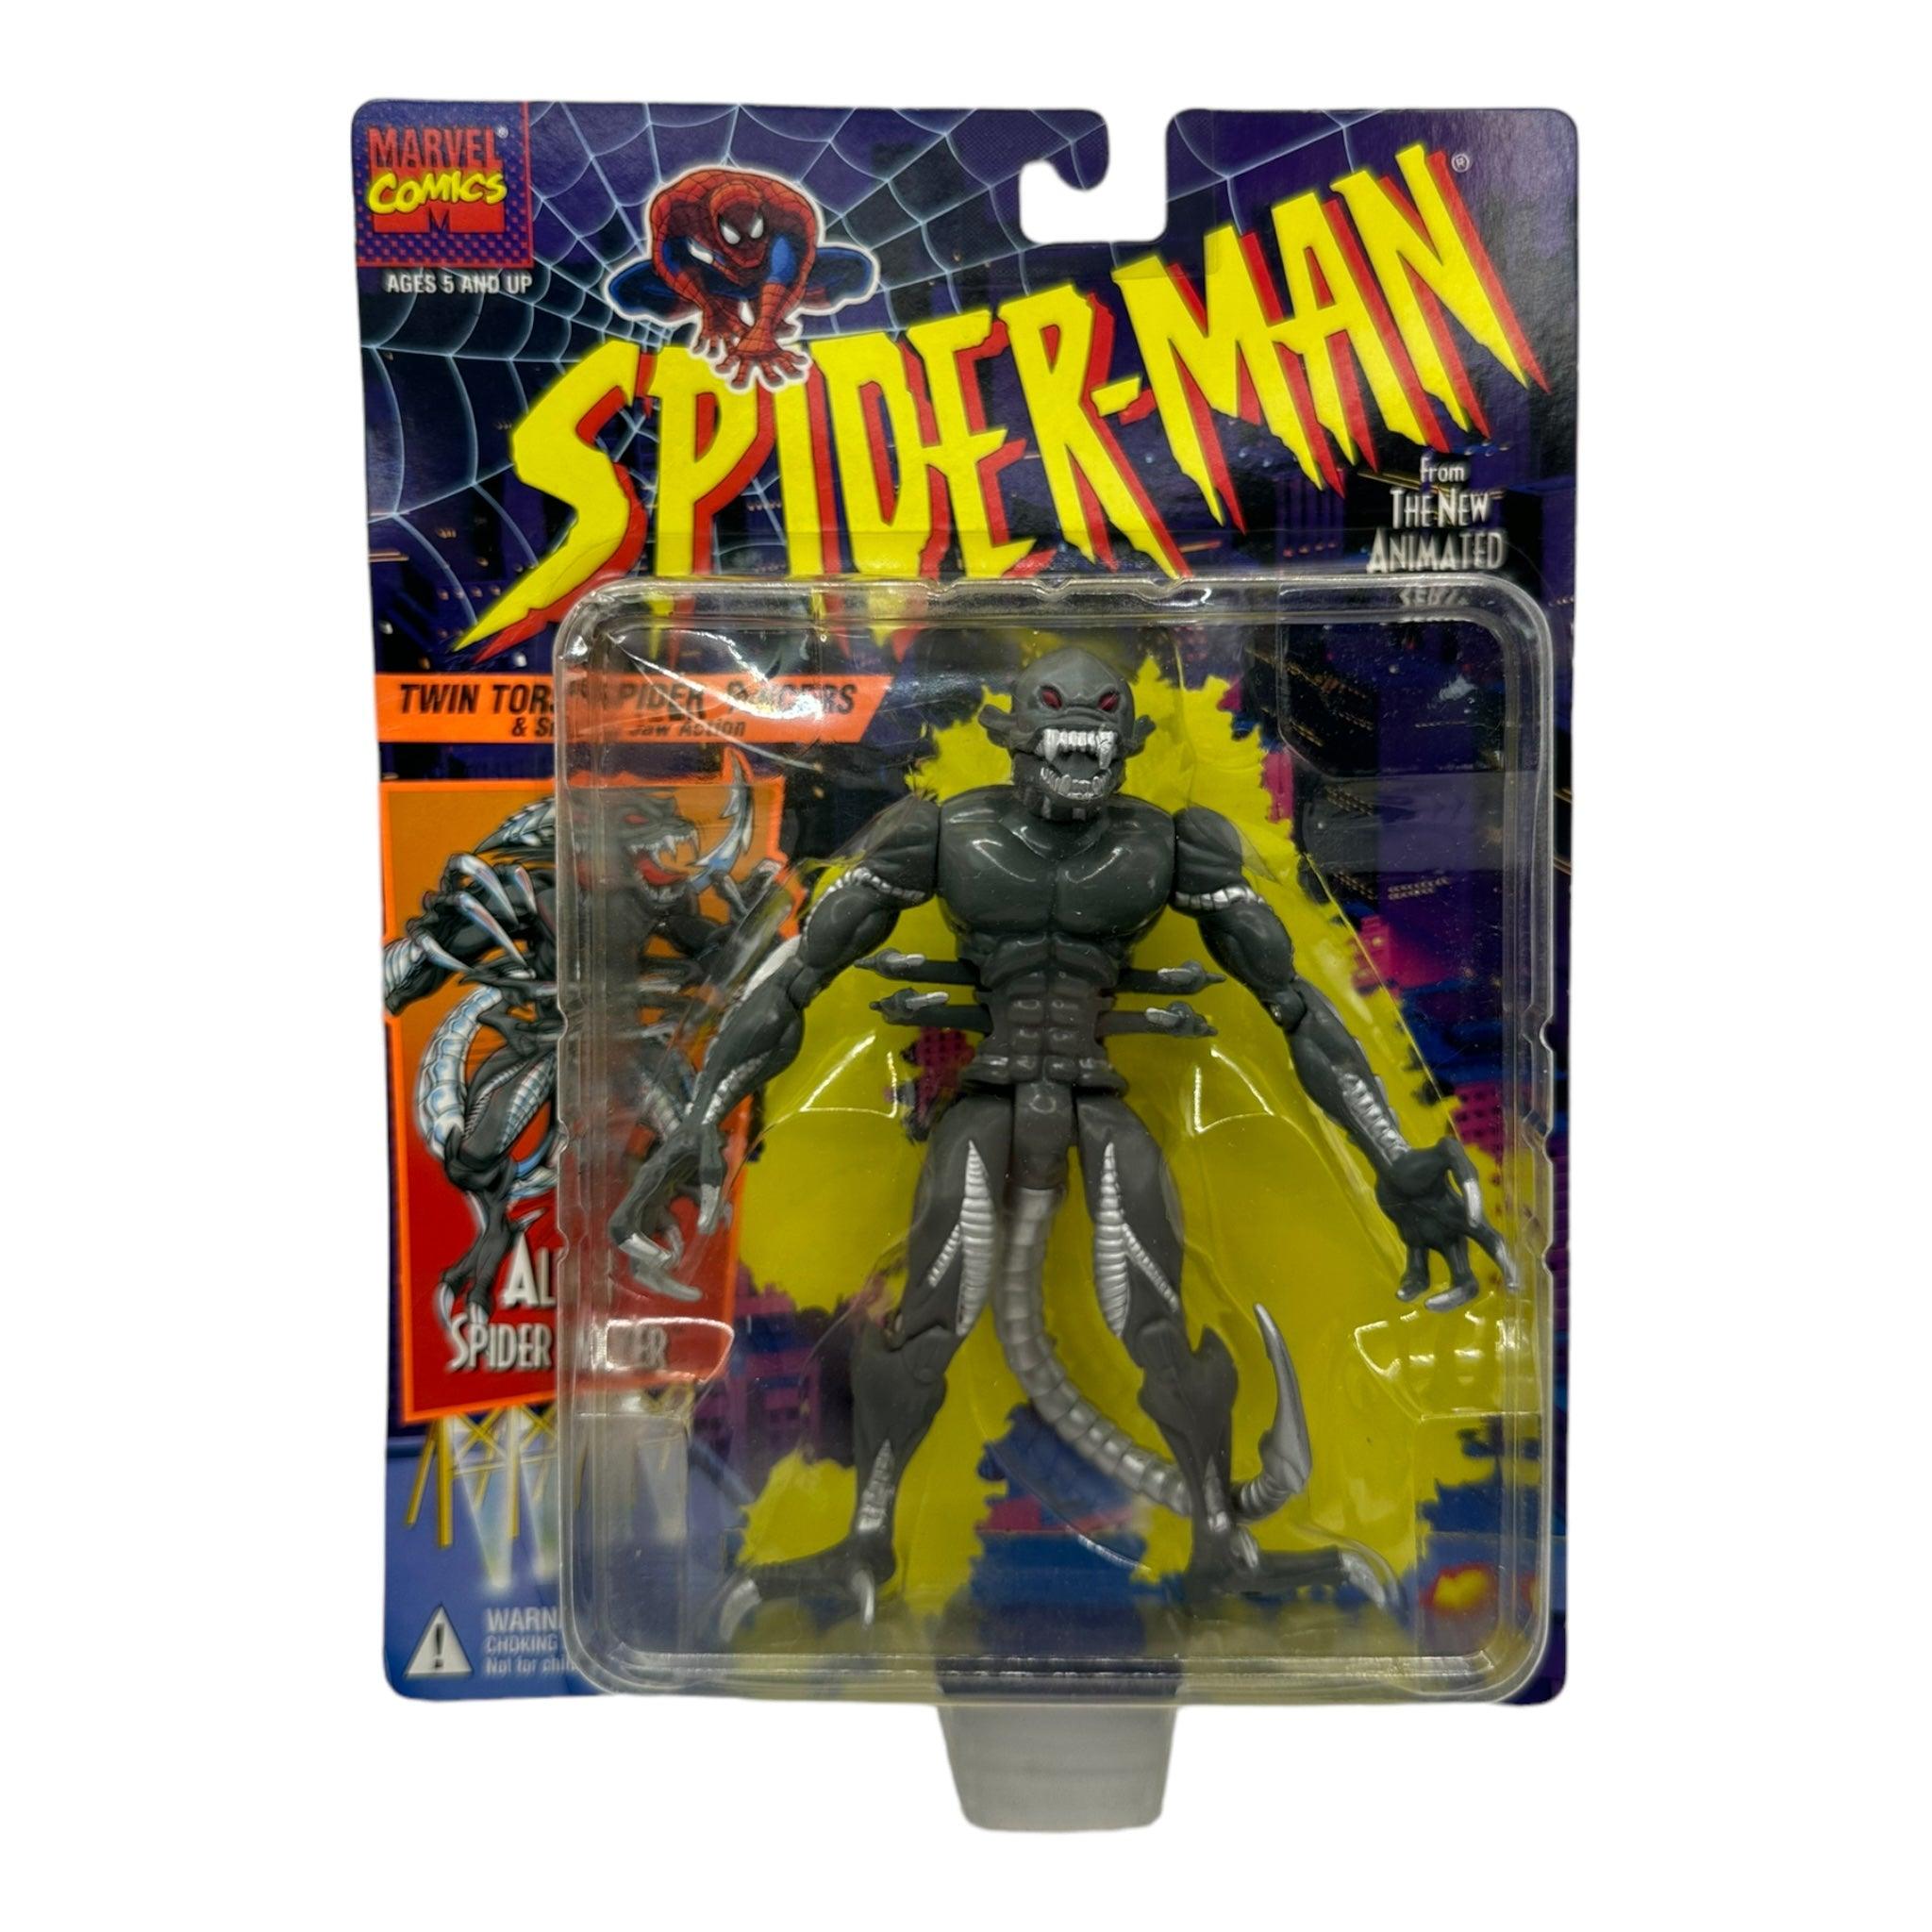 1994 TOYBIZ SPIDER-MAN ANIMATED SERIES 2 ALIEN SPIDER SLAYER AF - Kings Comics